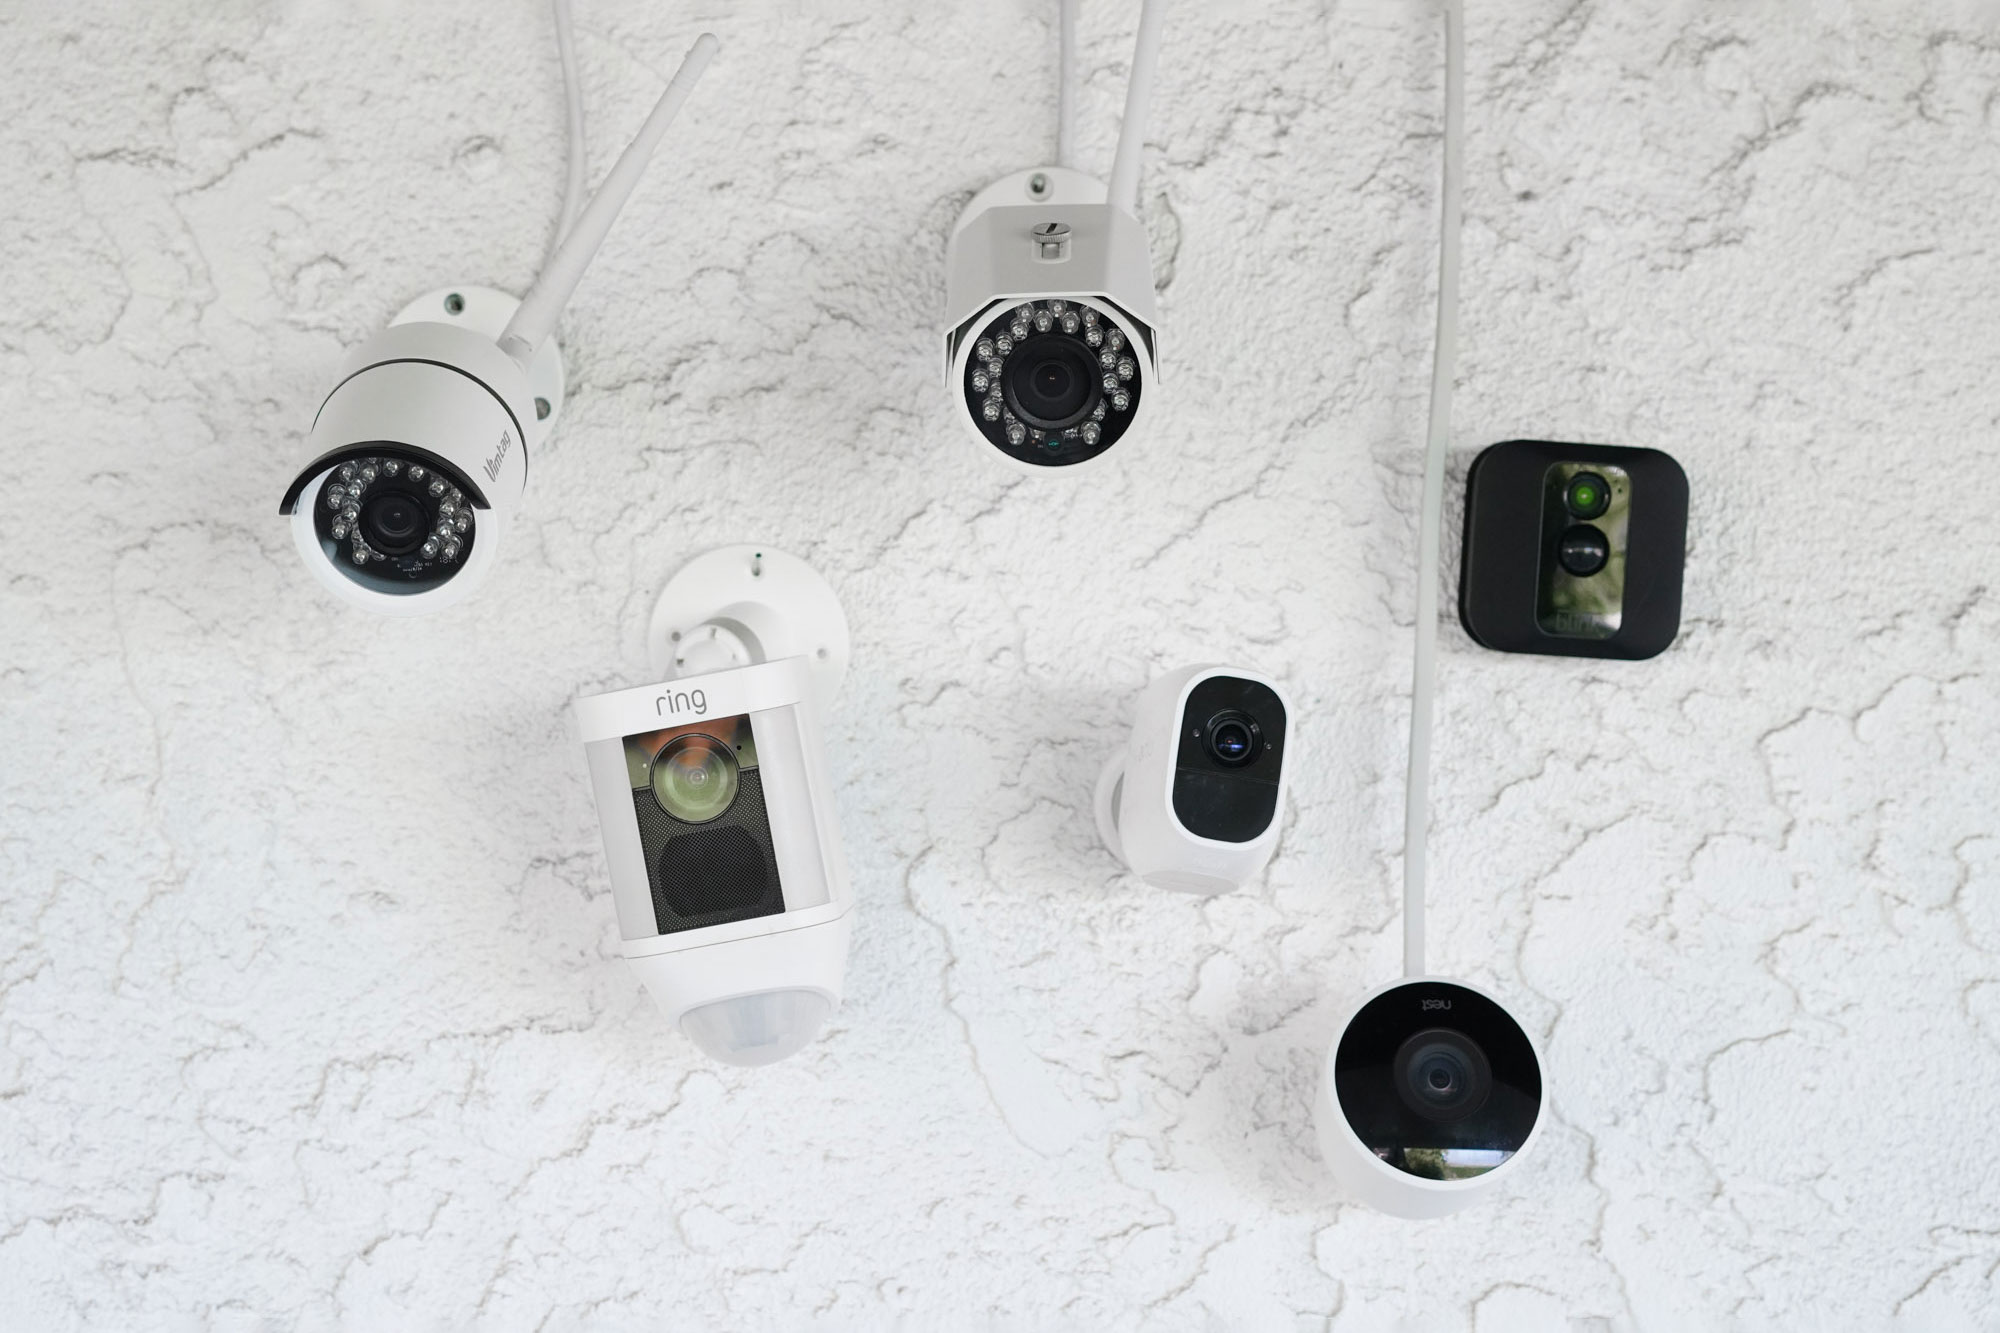 ring video doorbell outdoor monitoring system